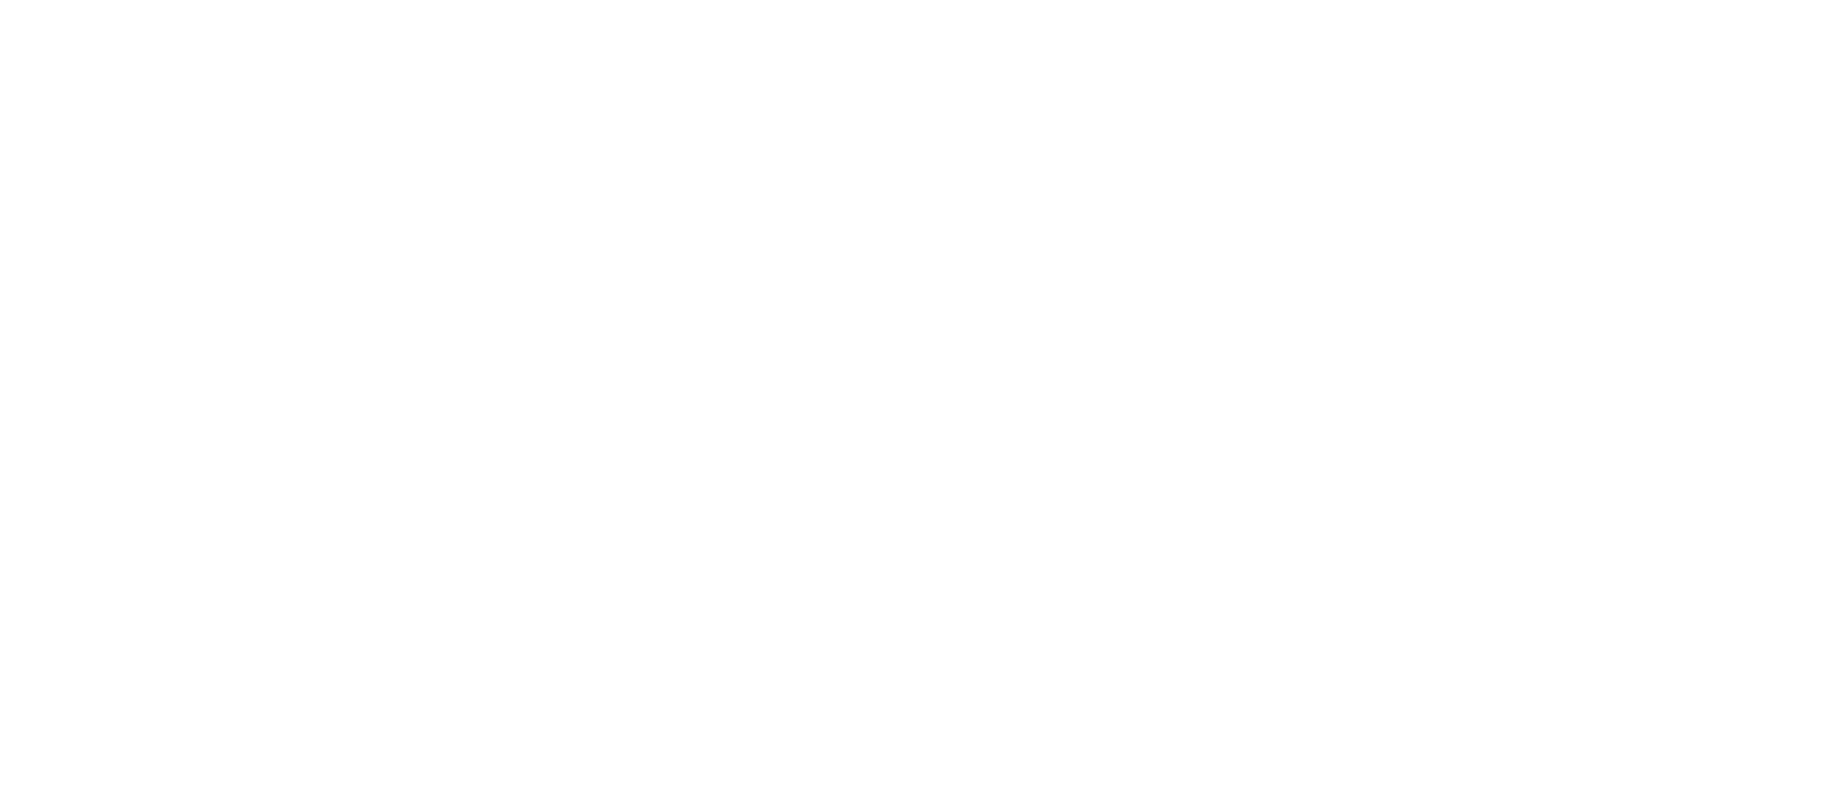 Усадьба Дубровицы в Подольске. Табличка "Музея нет". Фото проекта Музей, которого нет